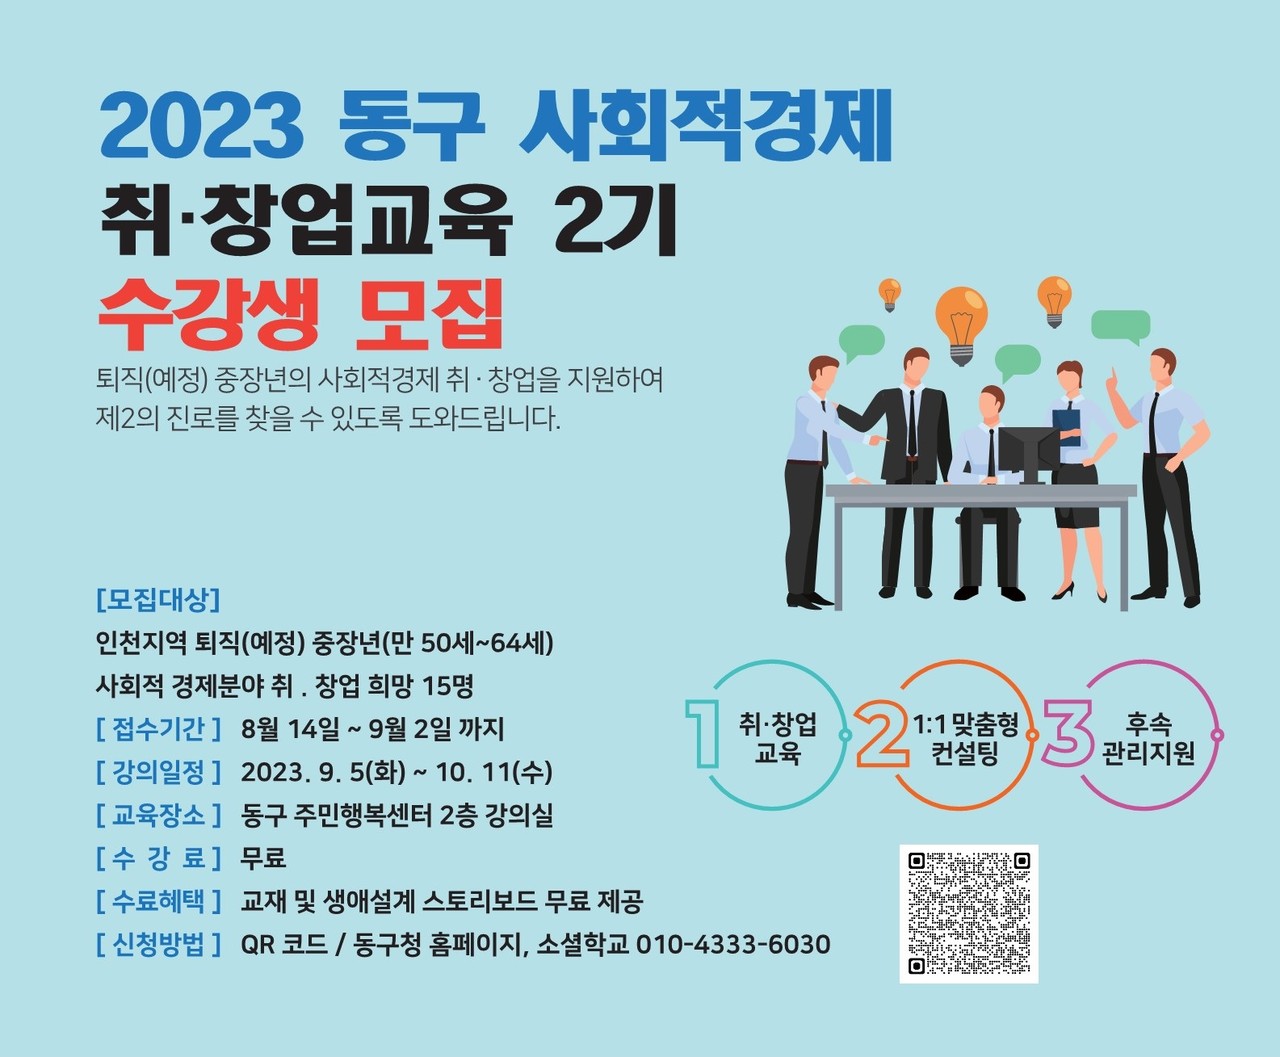 ▲ 인천 동구, 사회적경제 취·창업 교육 2기 수강생(중장년) 15명 모집